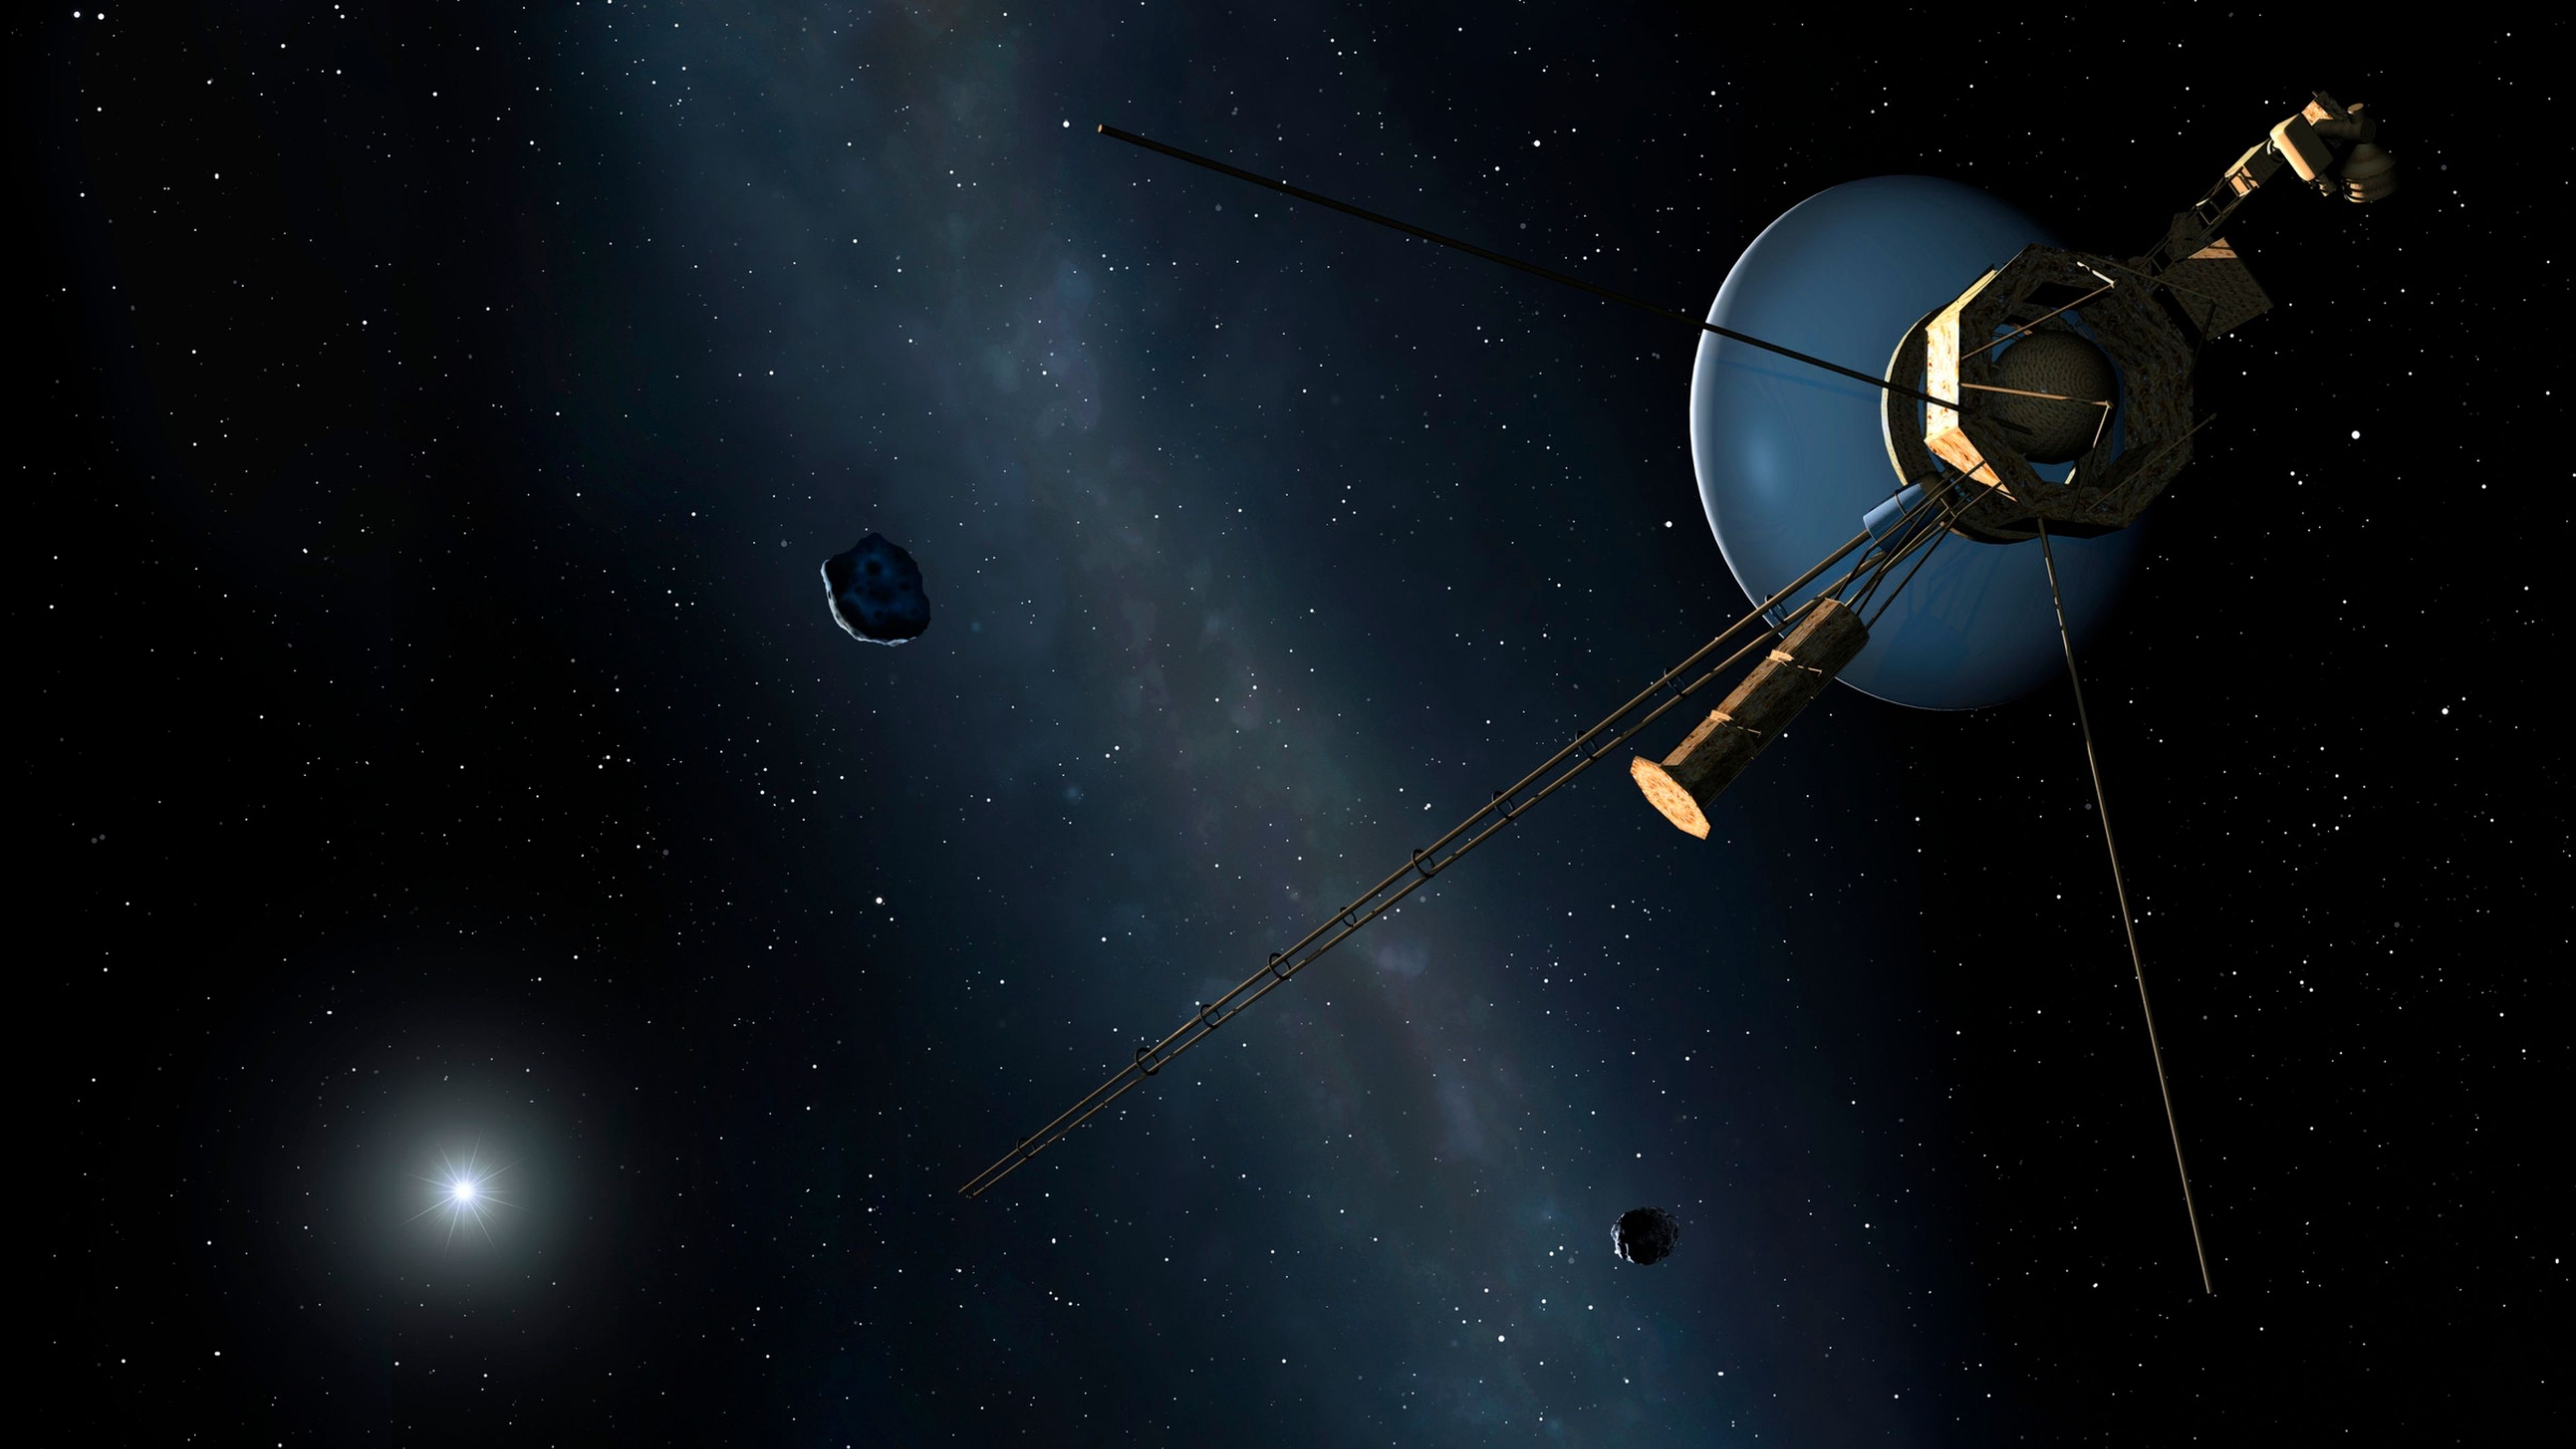 Un error de software pone en apuros a la Voyager 1, la sonda espacial más distante de la Tierra